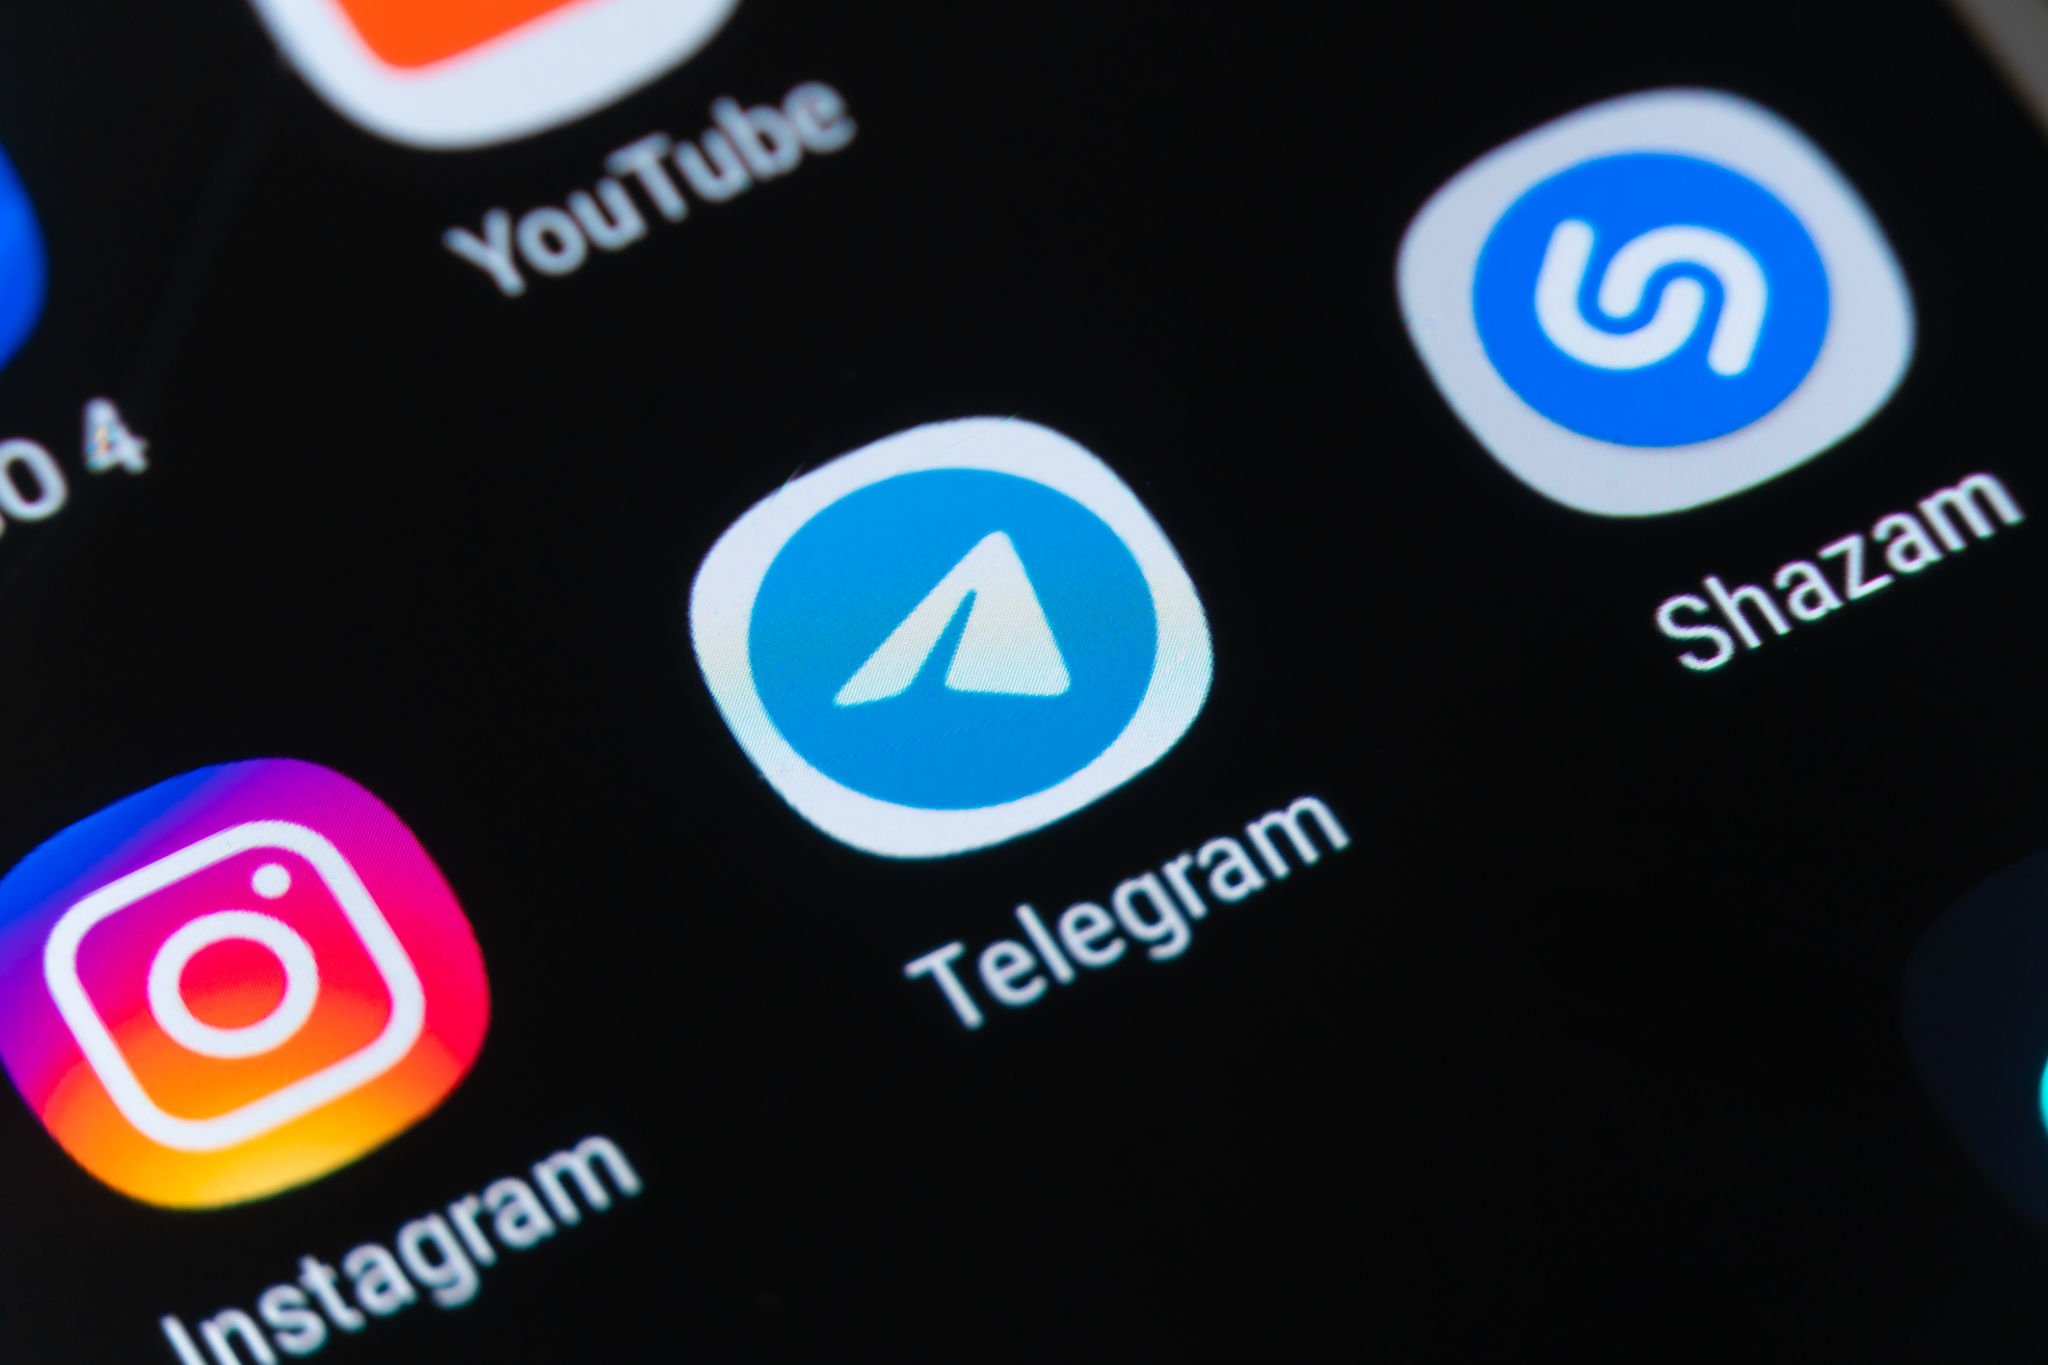 تلگرام چیست؟